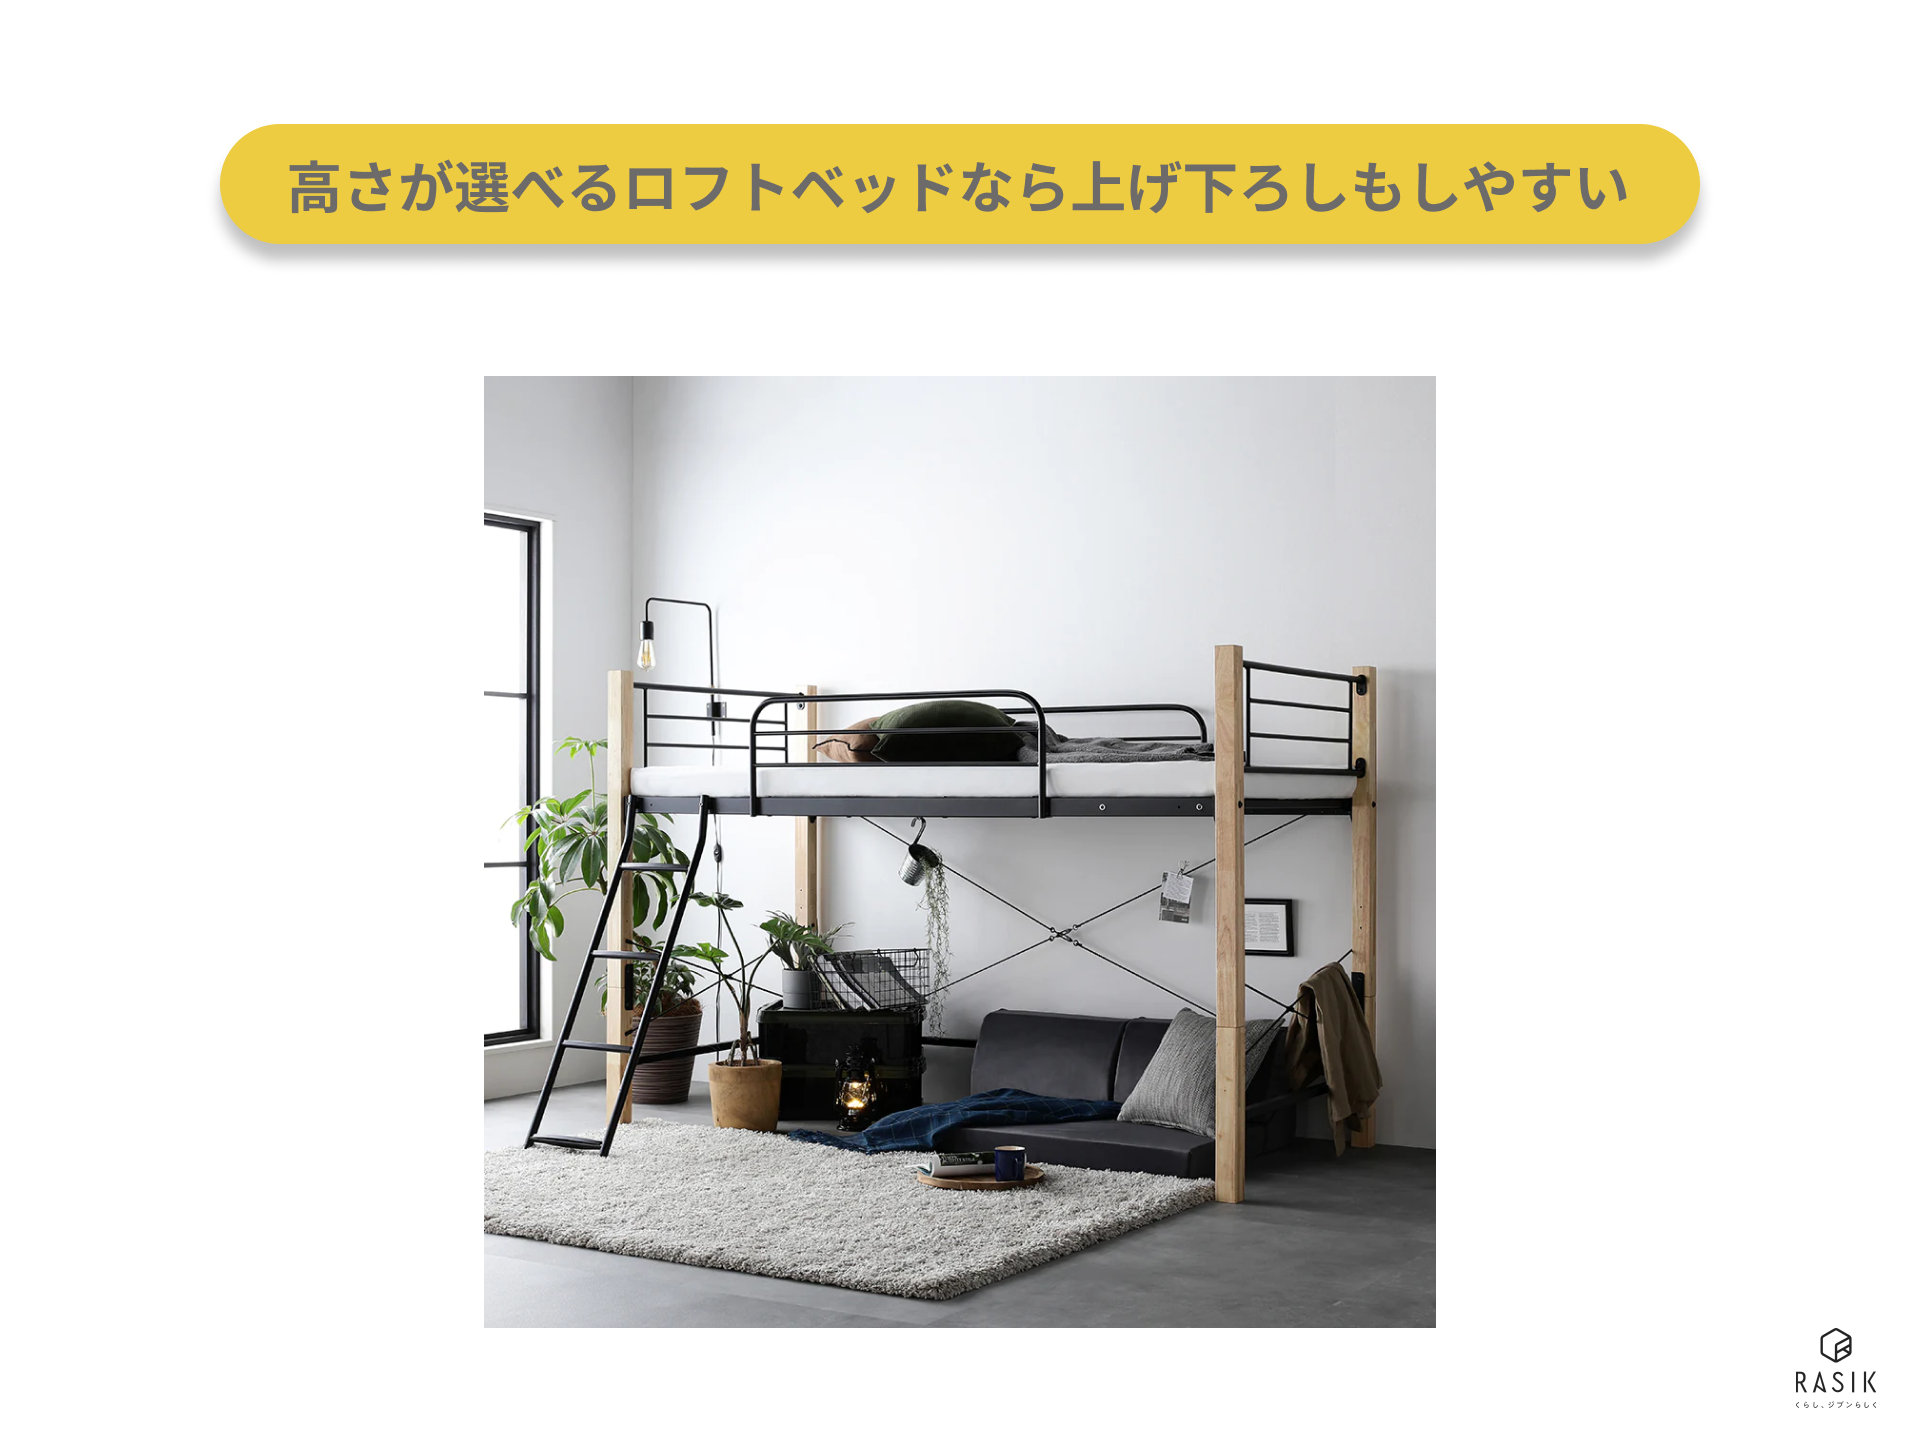 シングルサイズのマットレス向けのベッドの例